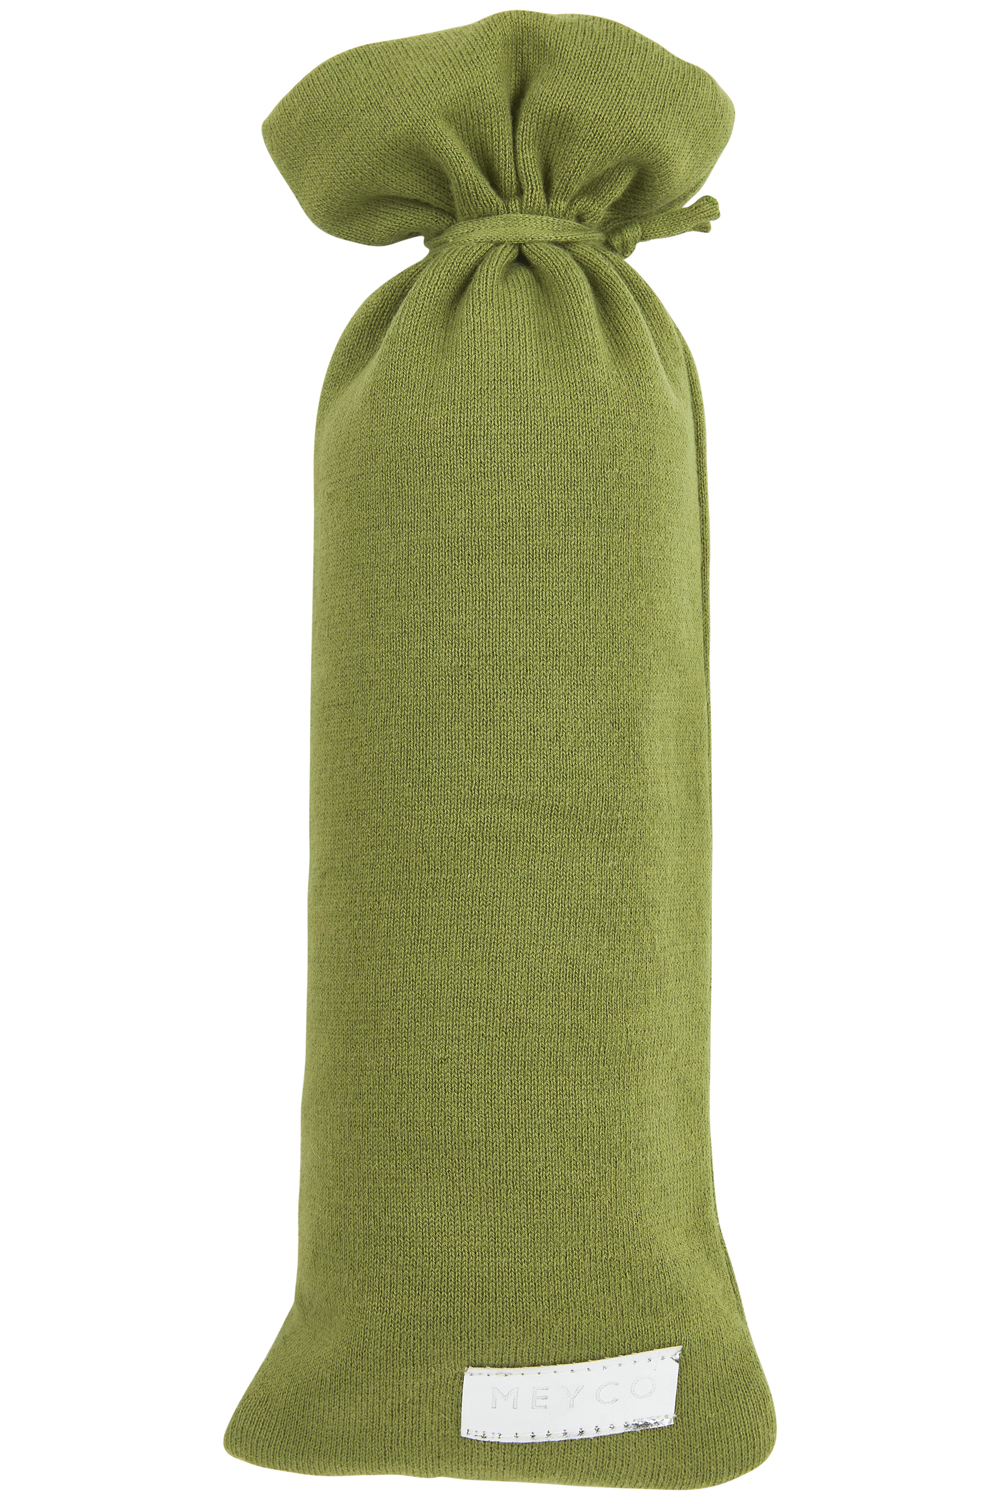 Kruikenzak Knit Basic - Avocado - 13xh35cm